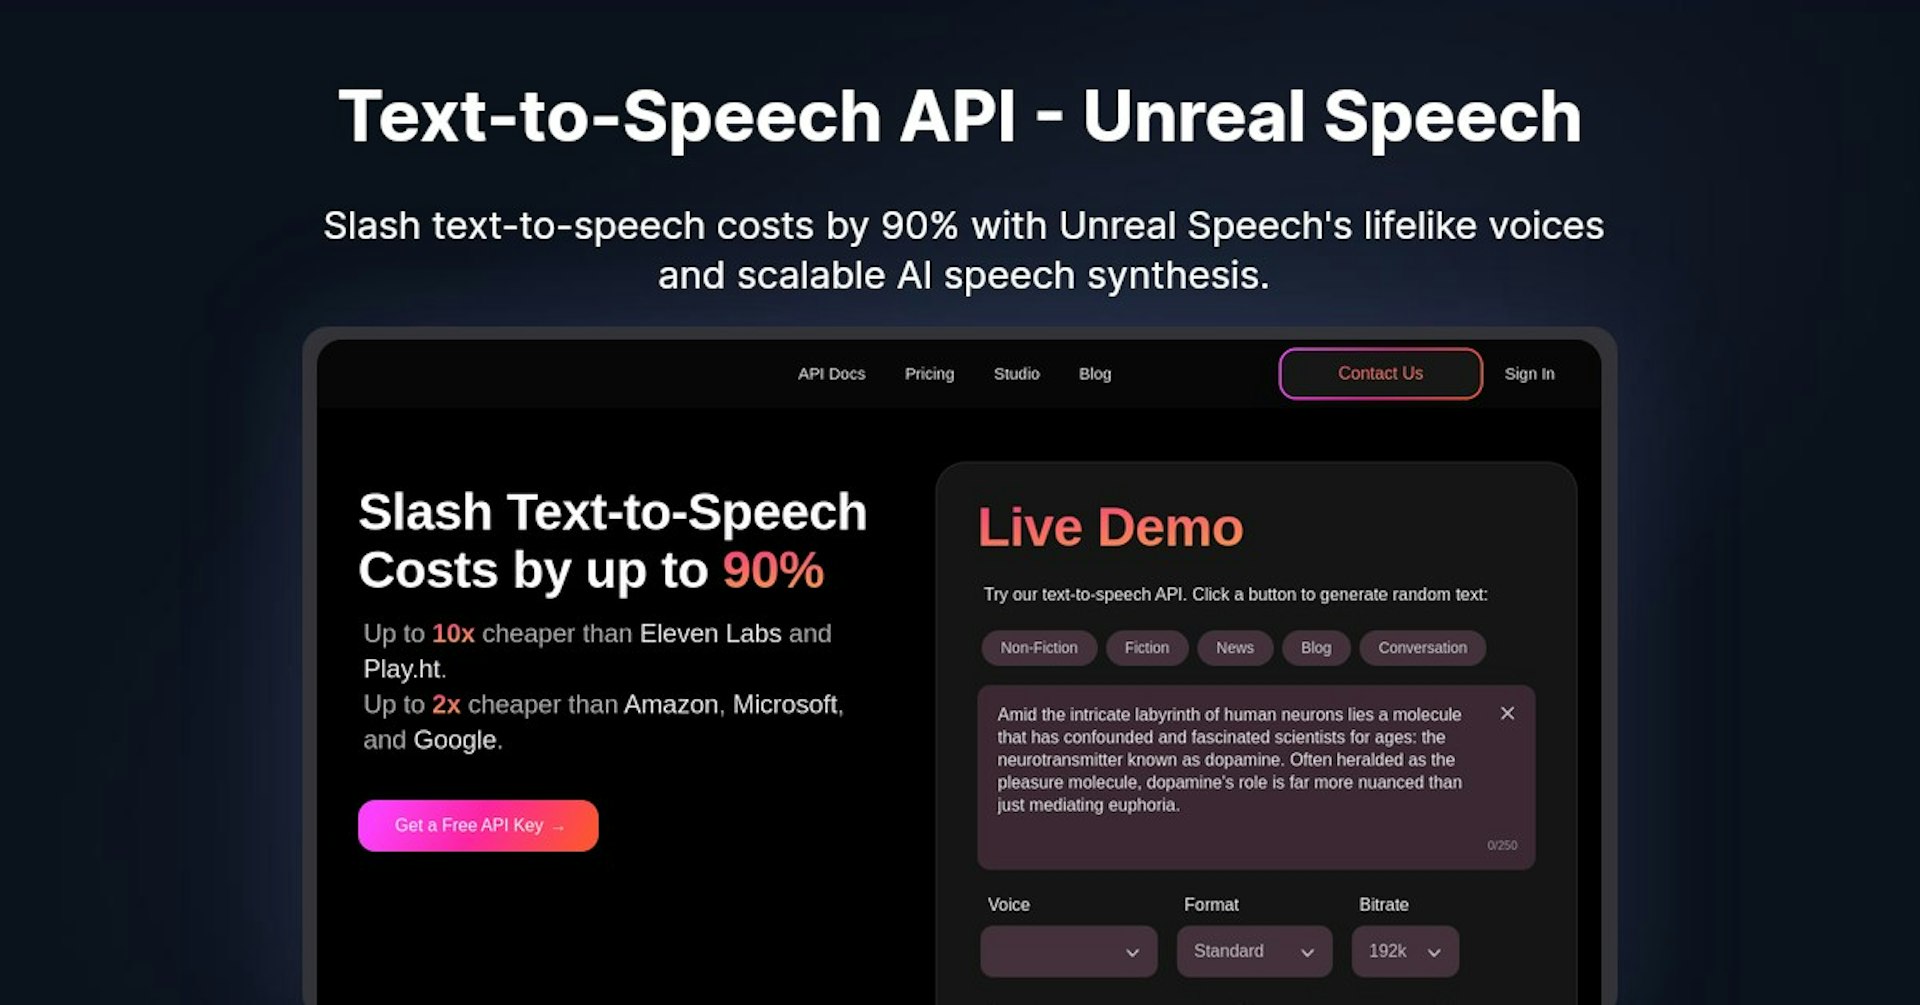 Text-to-Speech API - Unreal Speech